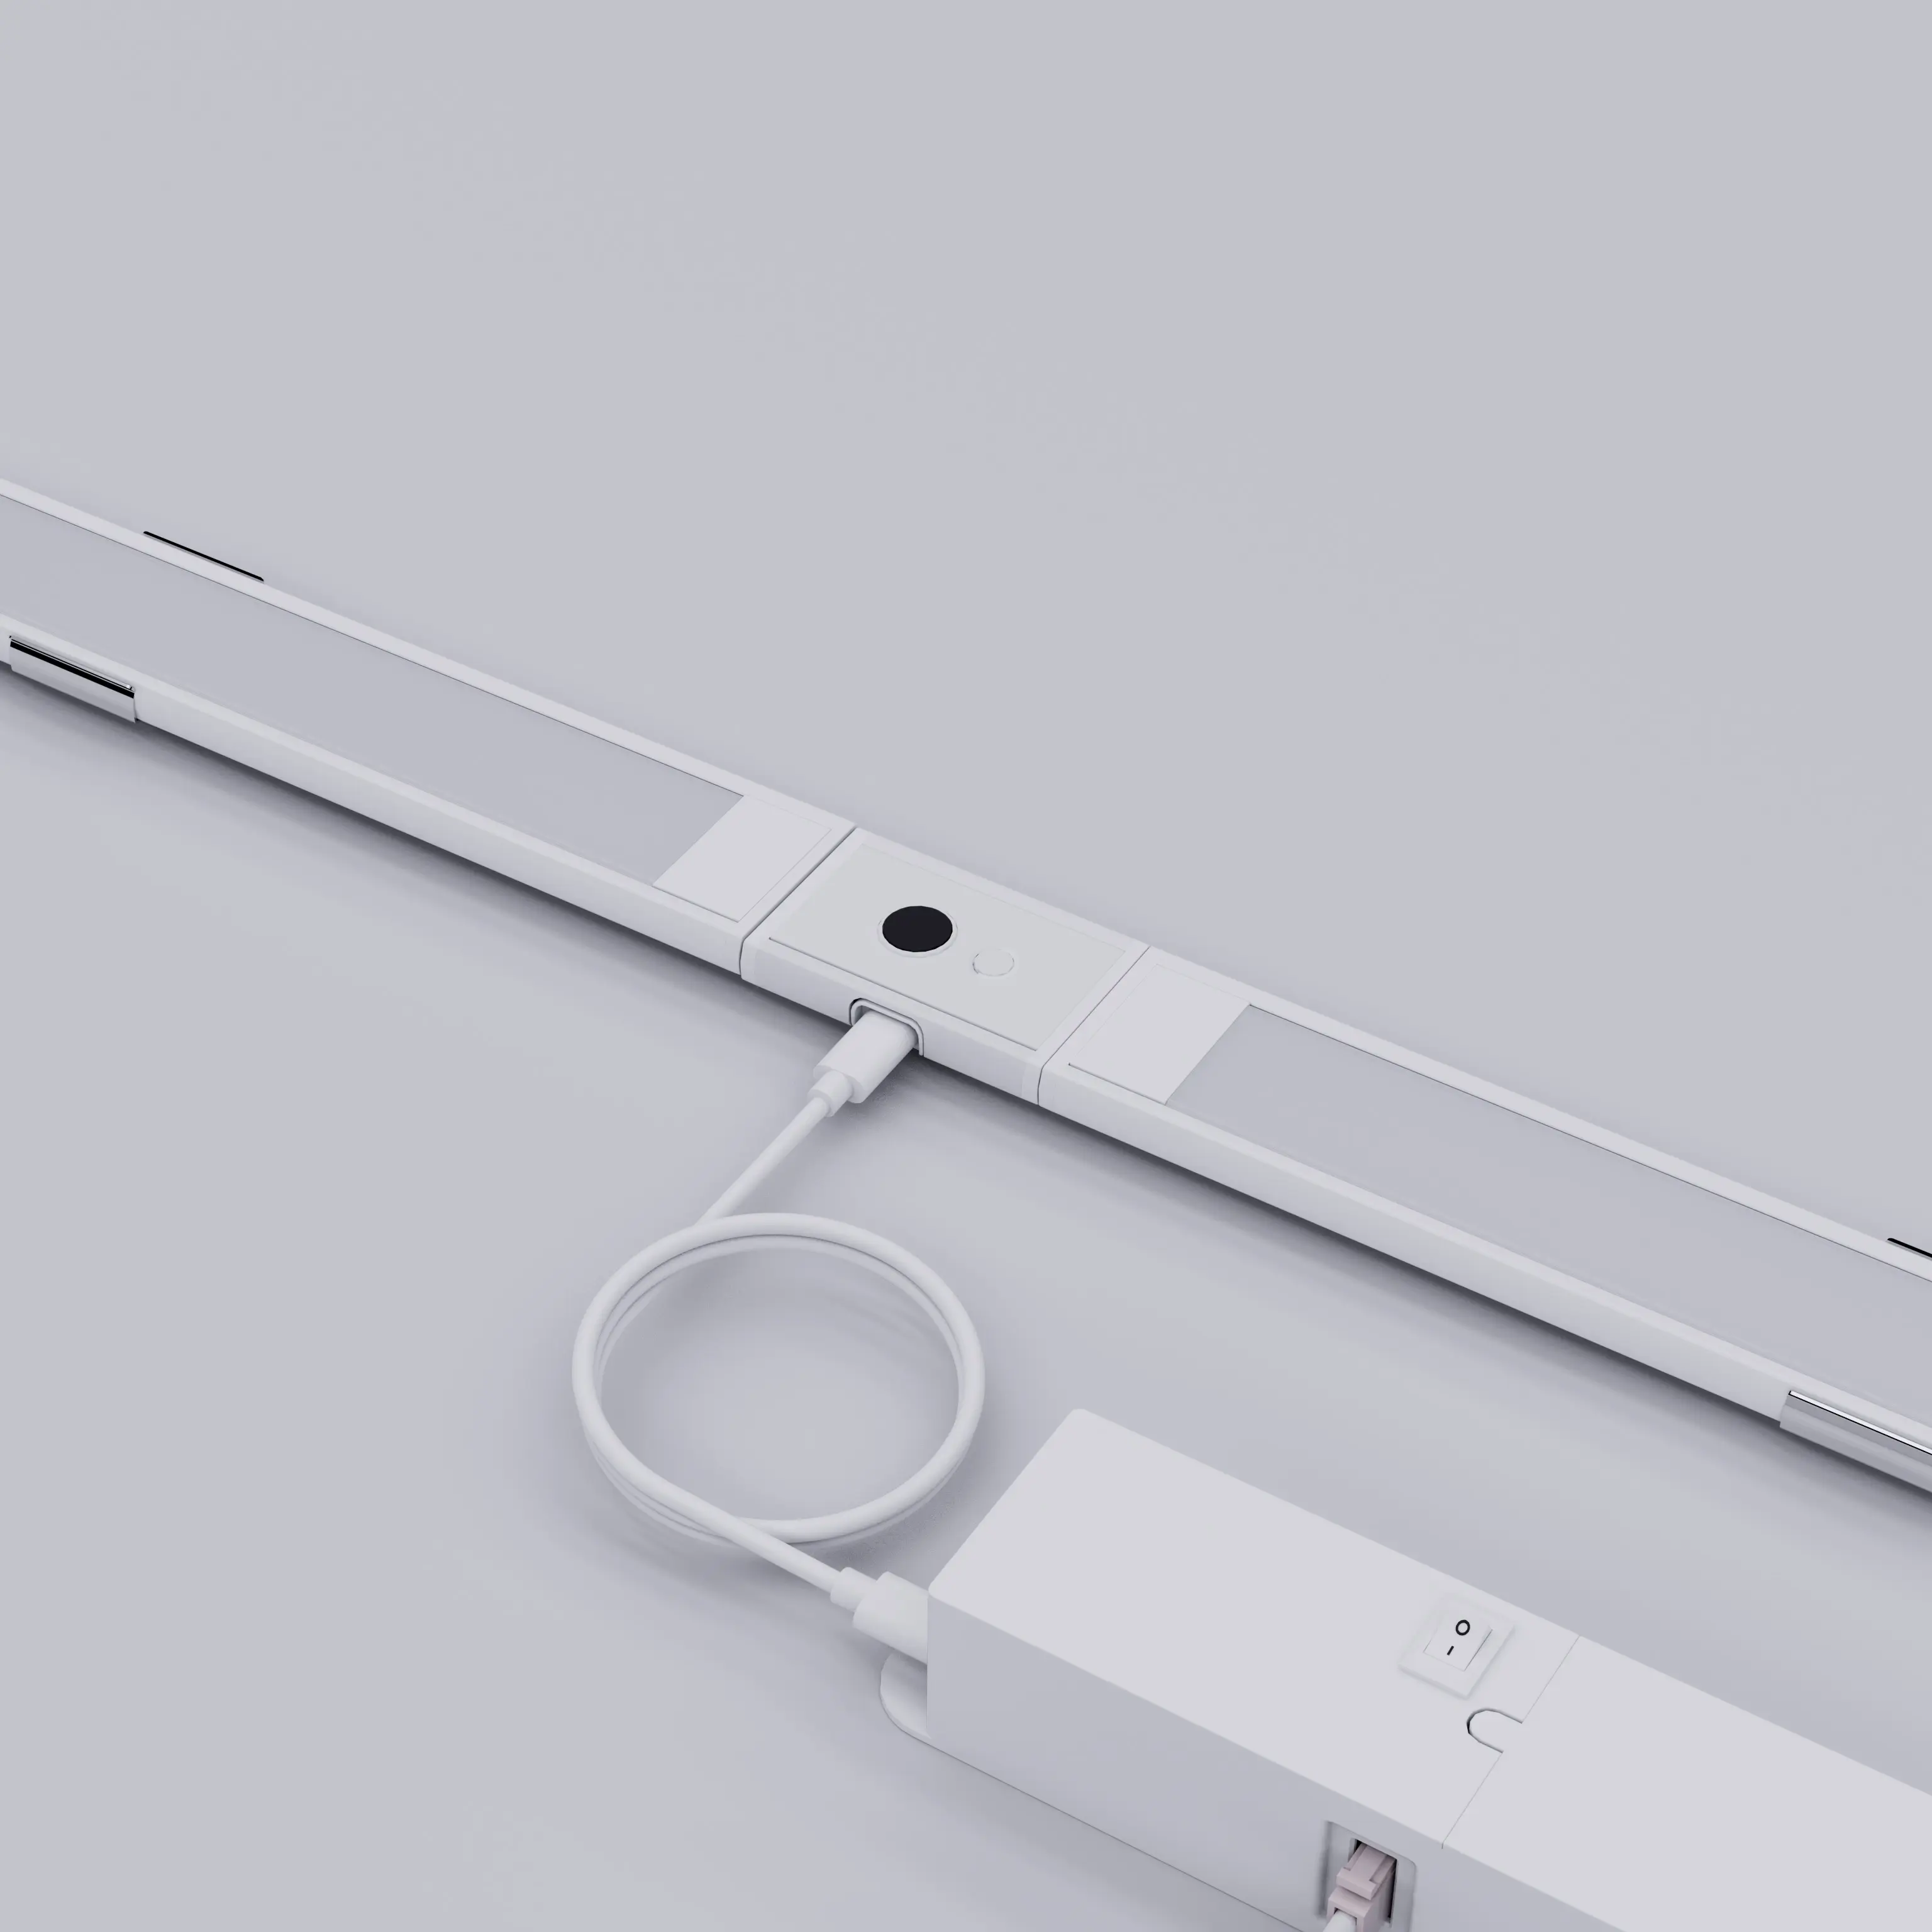 Linkable Under Cabinet Light Bar  Hand Wave Sensor Dimming Under Counter Lights for Kitchen 3PCS Kit  12W  960lm